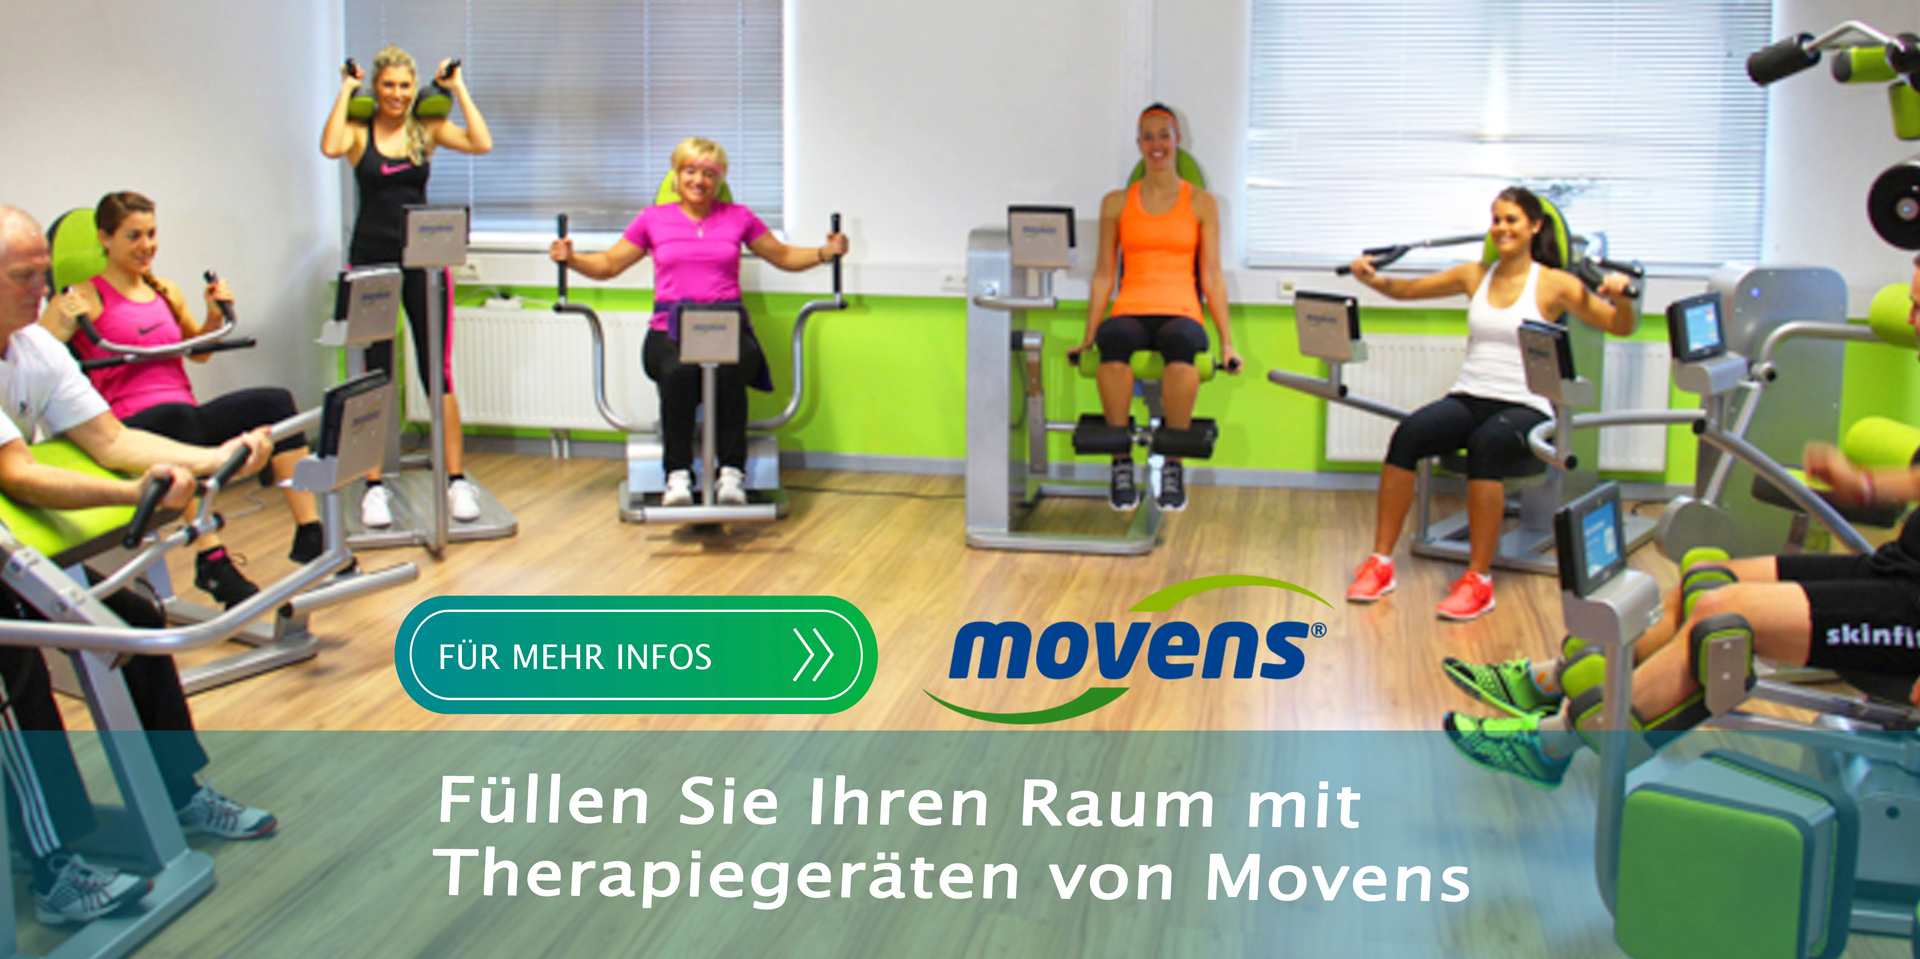 Movens - Therapiegeräte für Physiotherapie und Reha